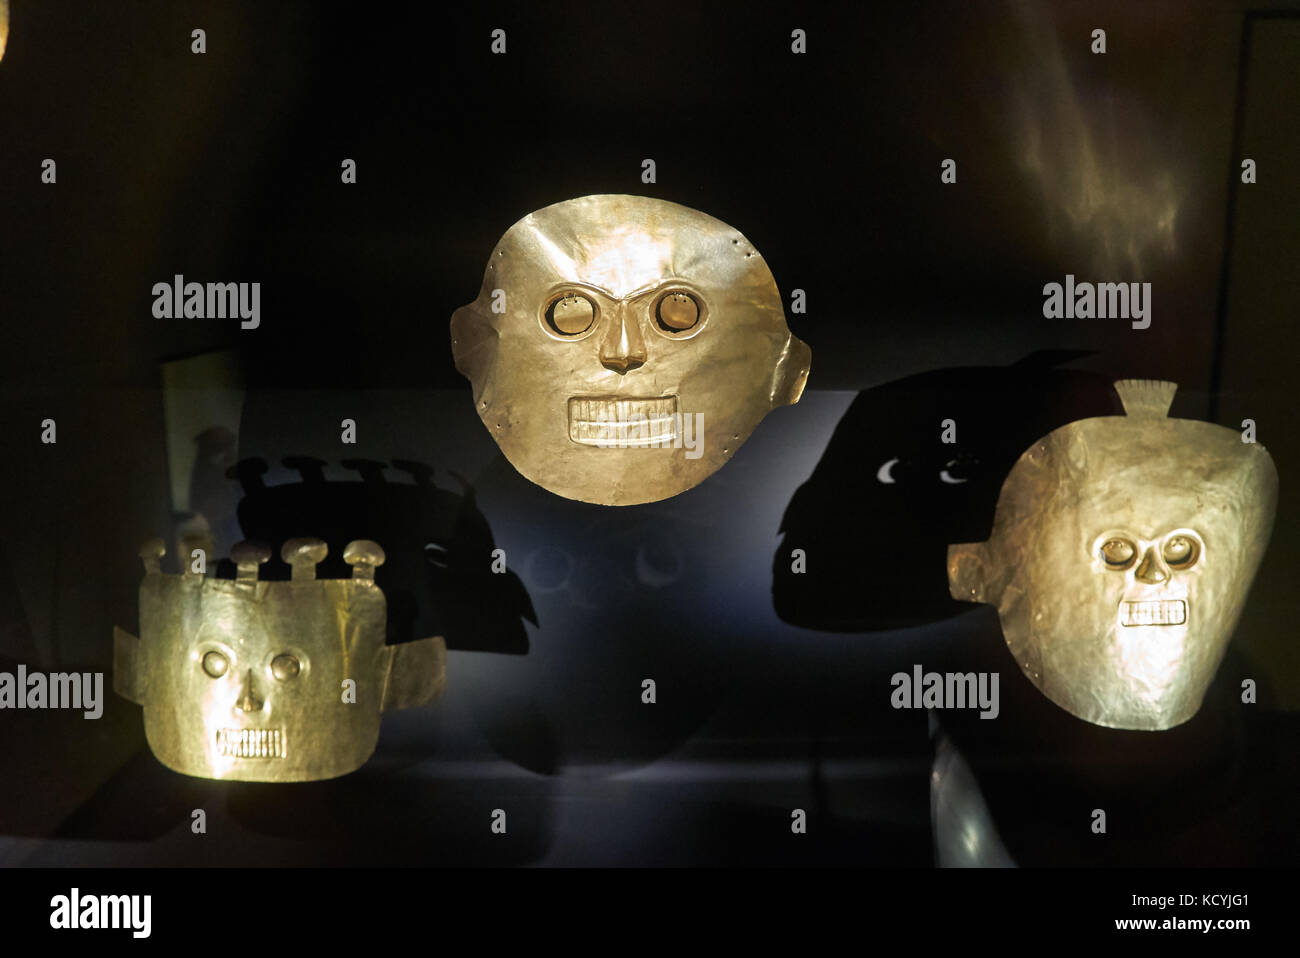 Masque d'or, pièces d'exposition dans le musée de l'or ou Museo del Oro, Bogota, Colombie, Amérique du Sud Banque D'Images